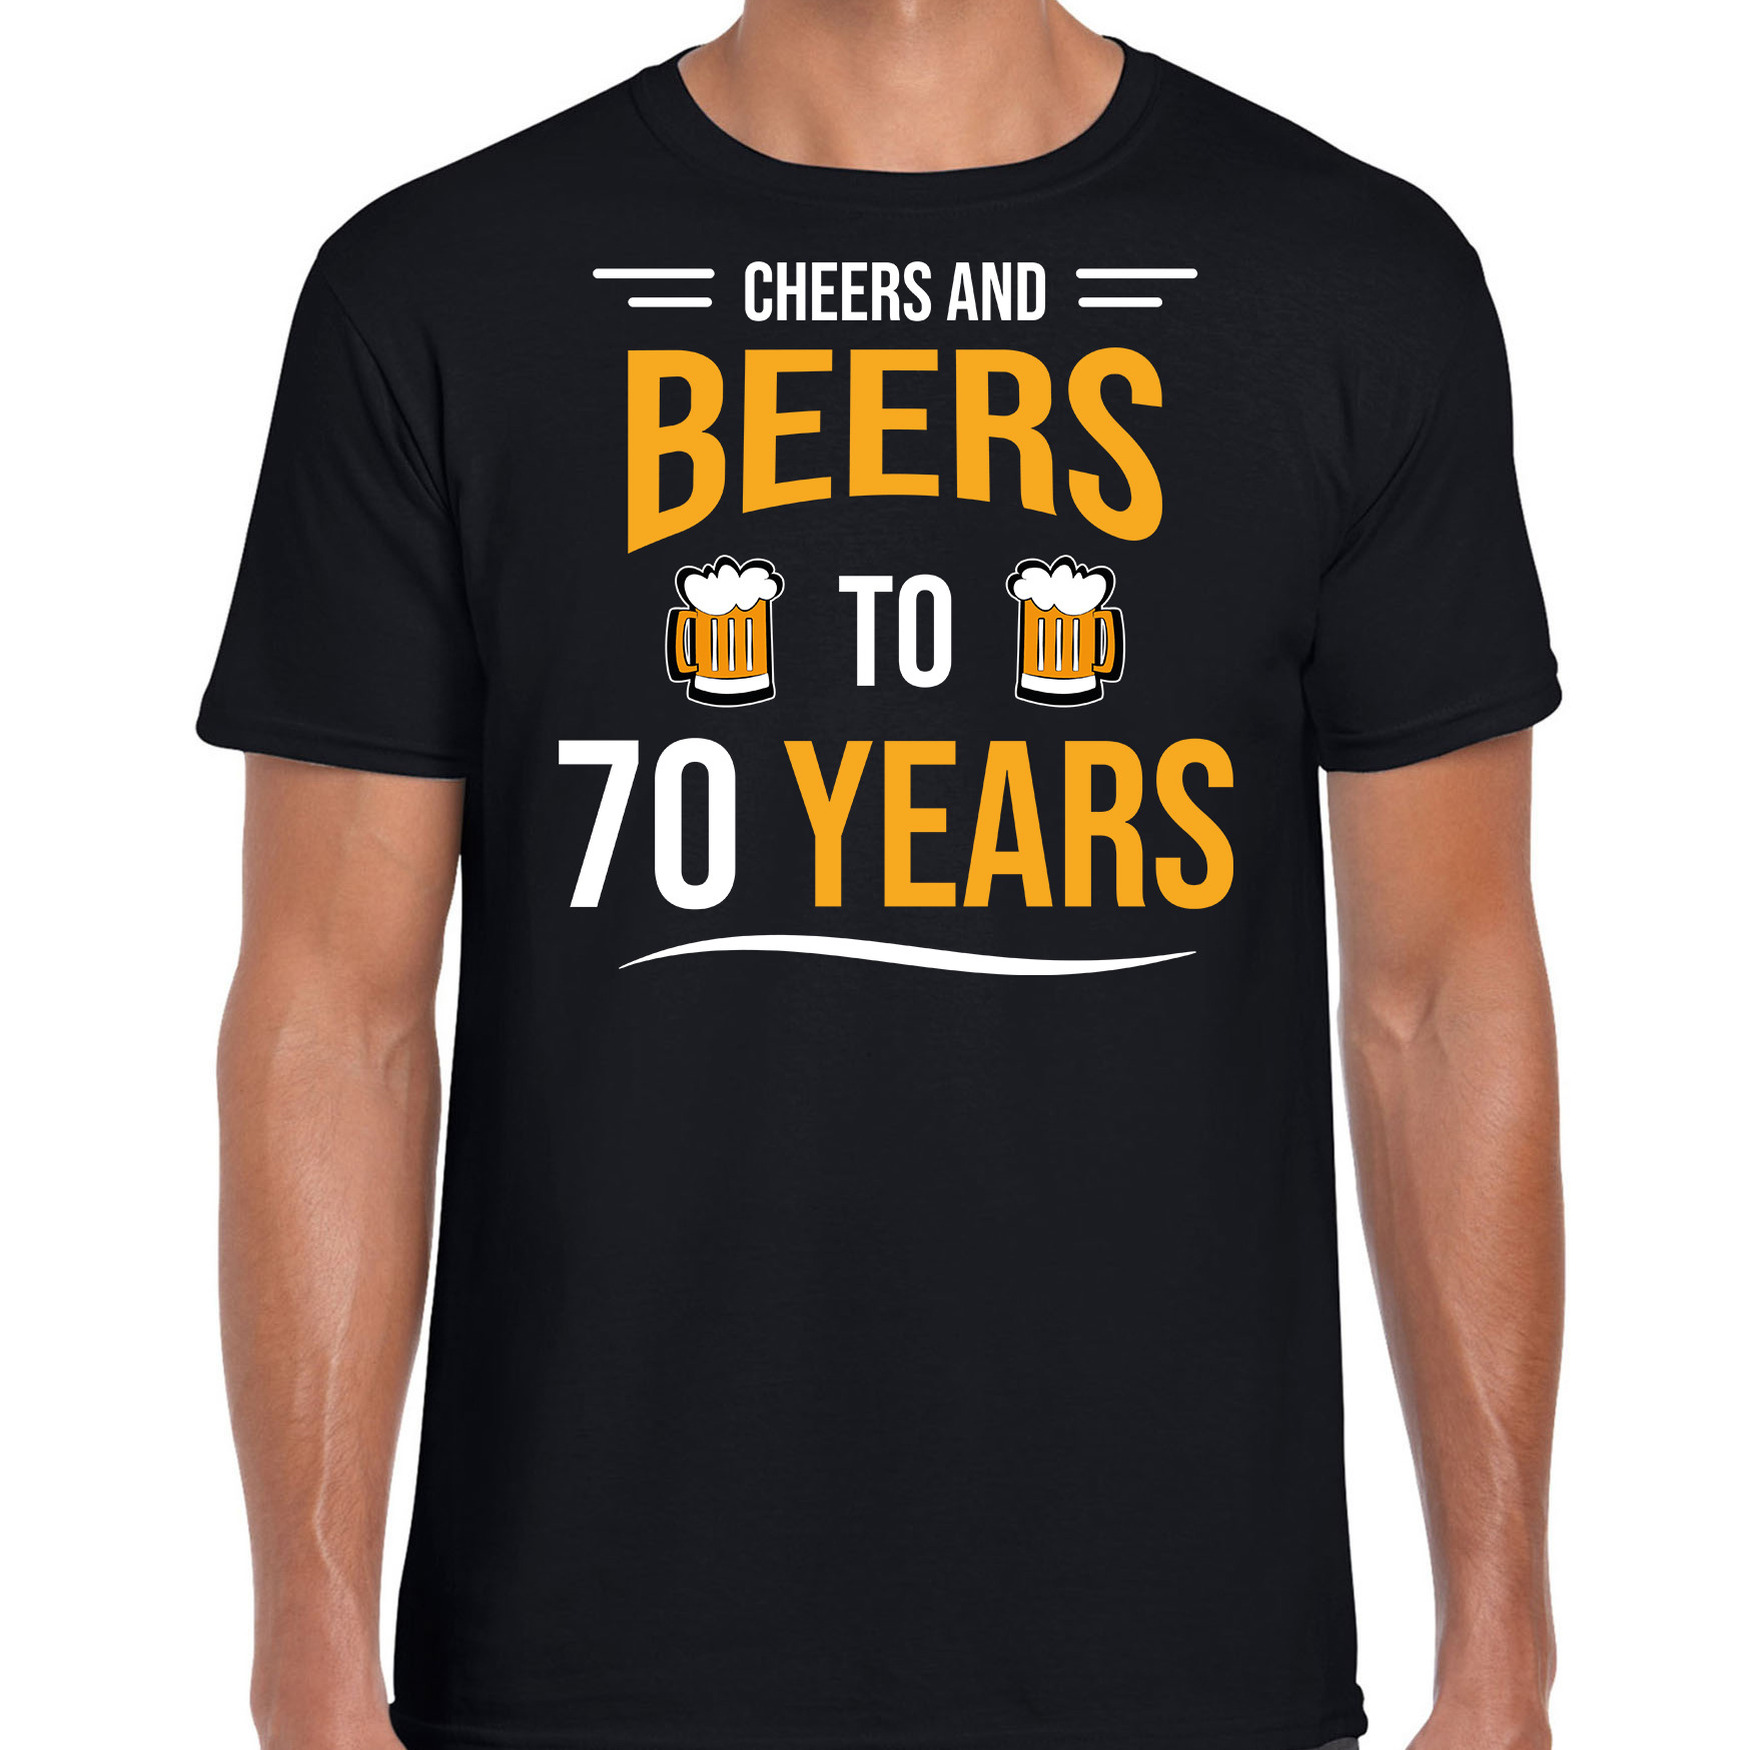 Cheers and beers 70 jaar verjaardag cadeau t-shirt zwart voor heren